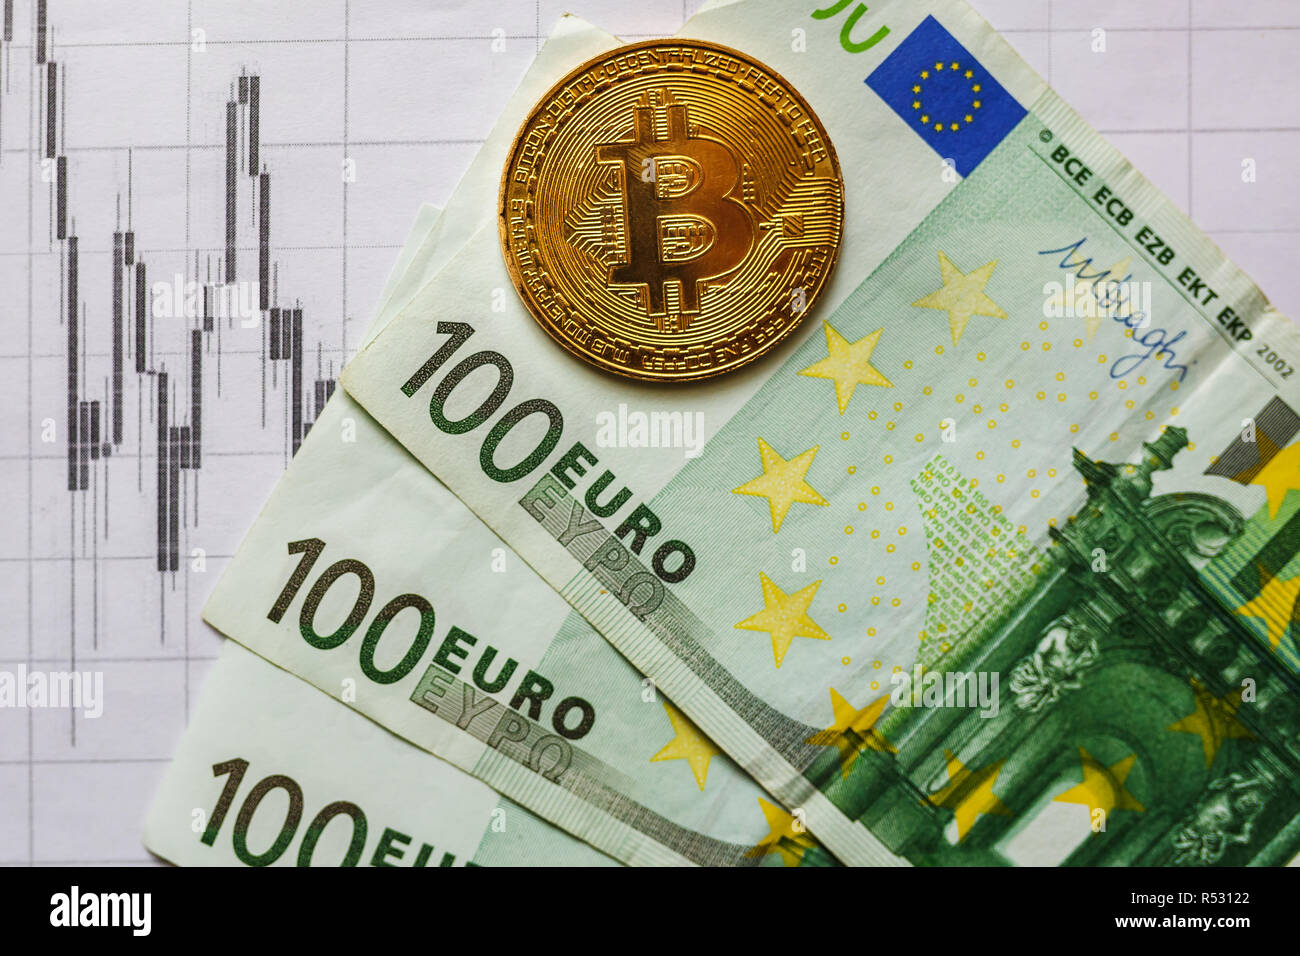 Обмен биткоин евро 100 вебмани на perfect money